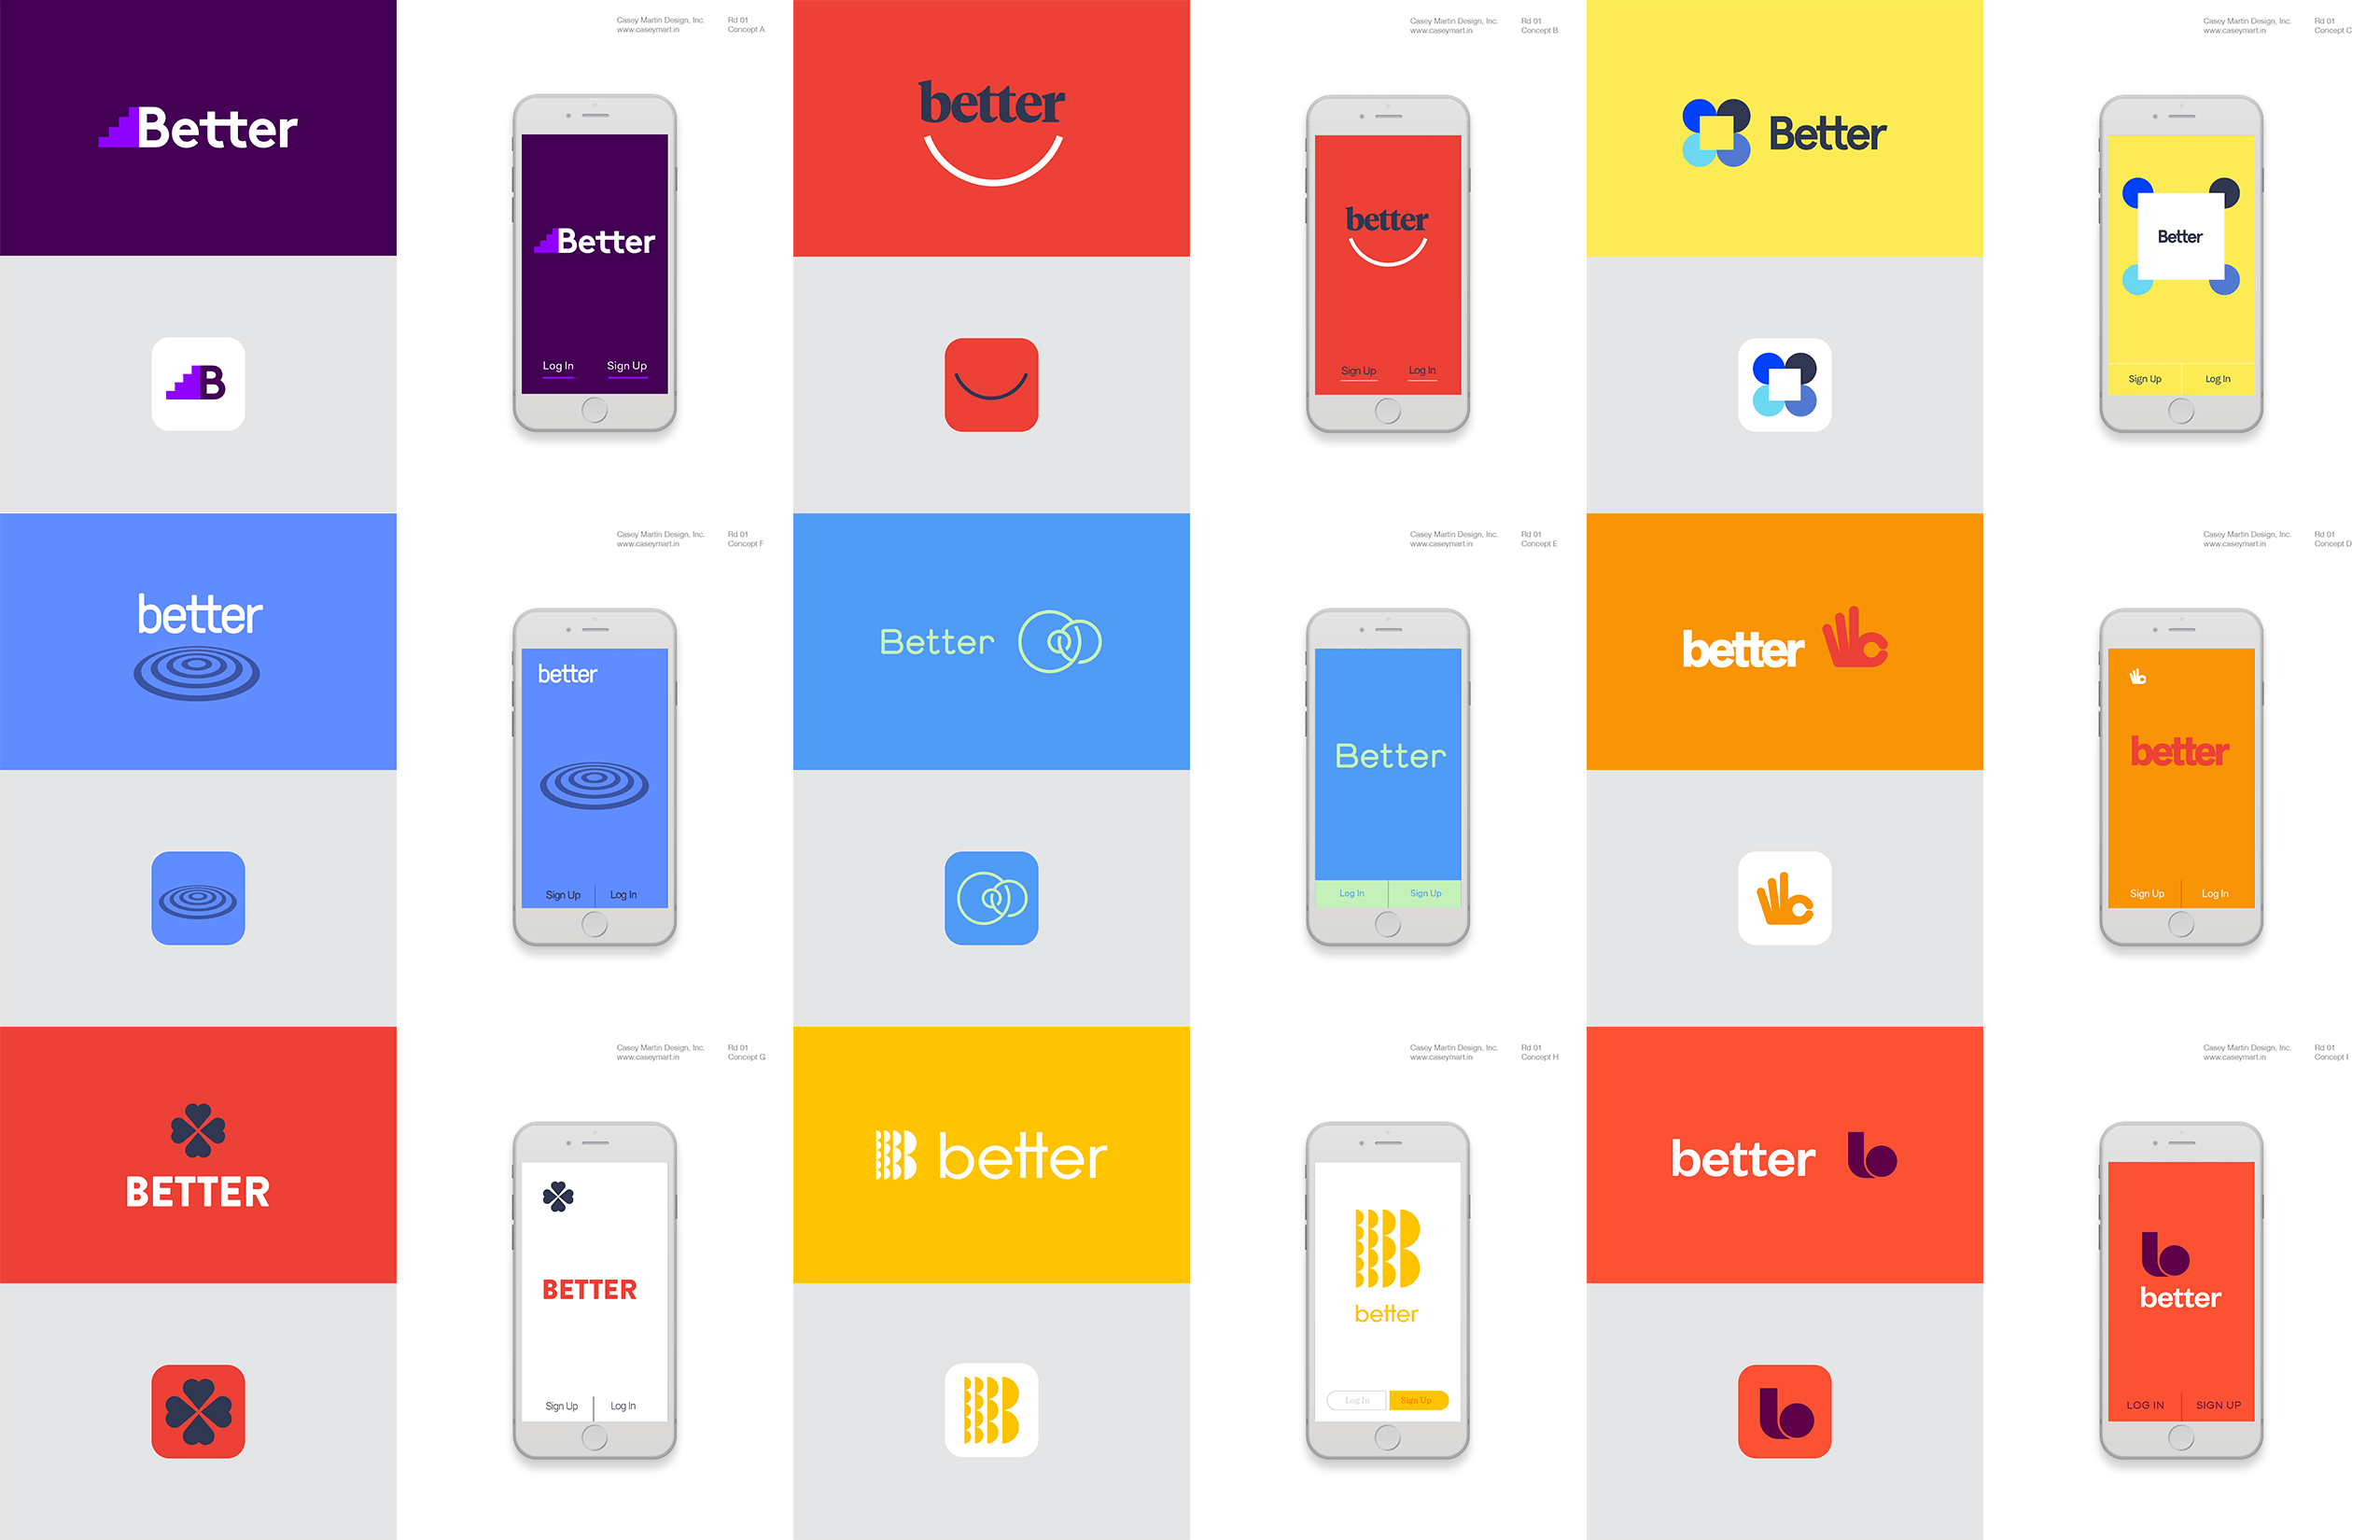 Better app design